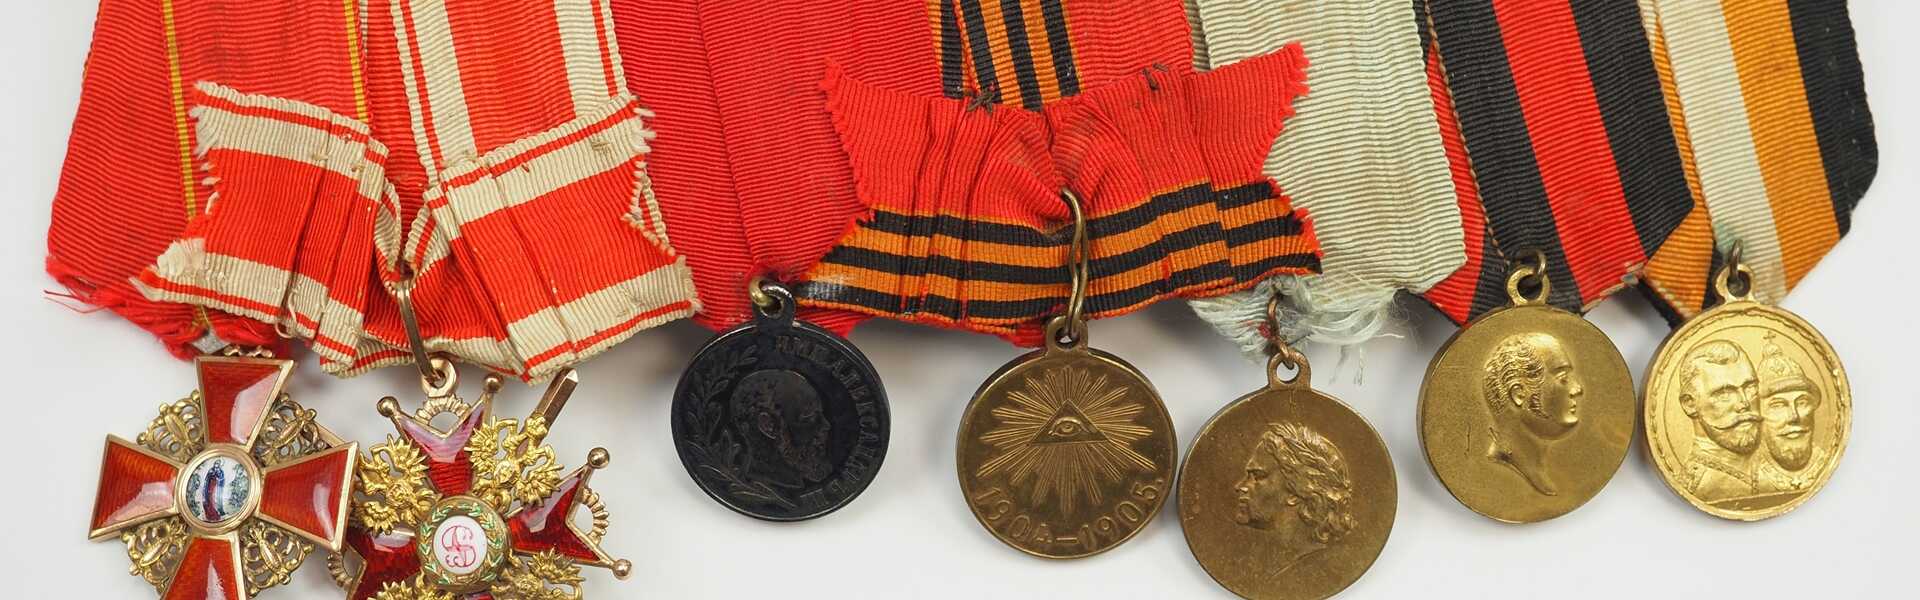 Russland: Große Ordenschnalle eines Offiziers mit 7 Auszeichnungen.